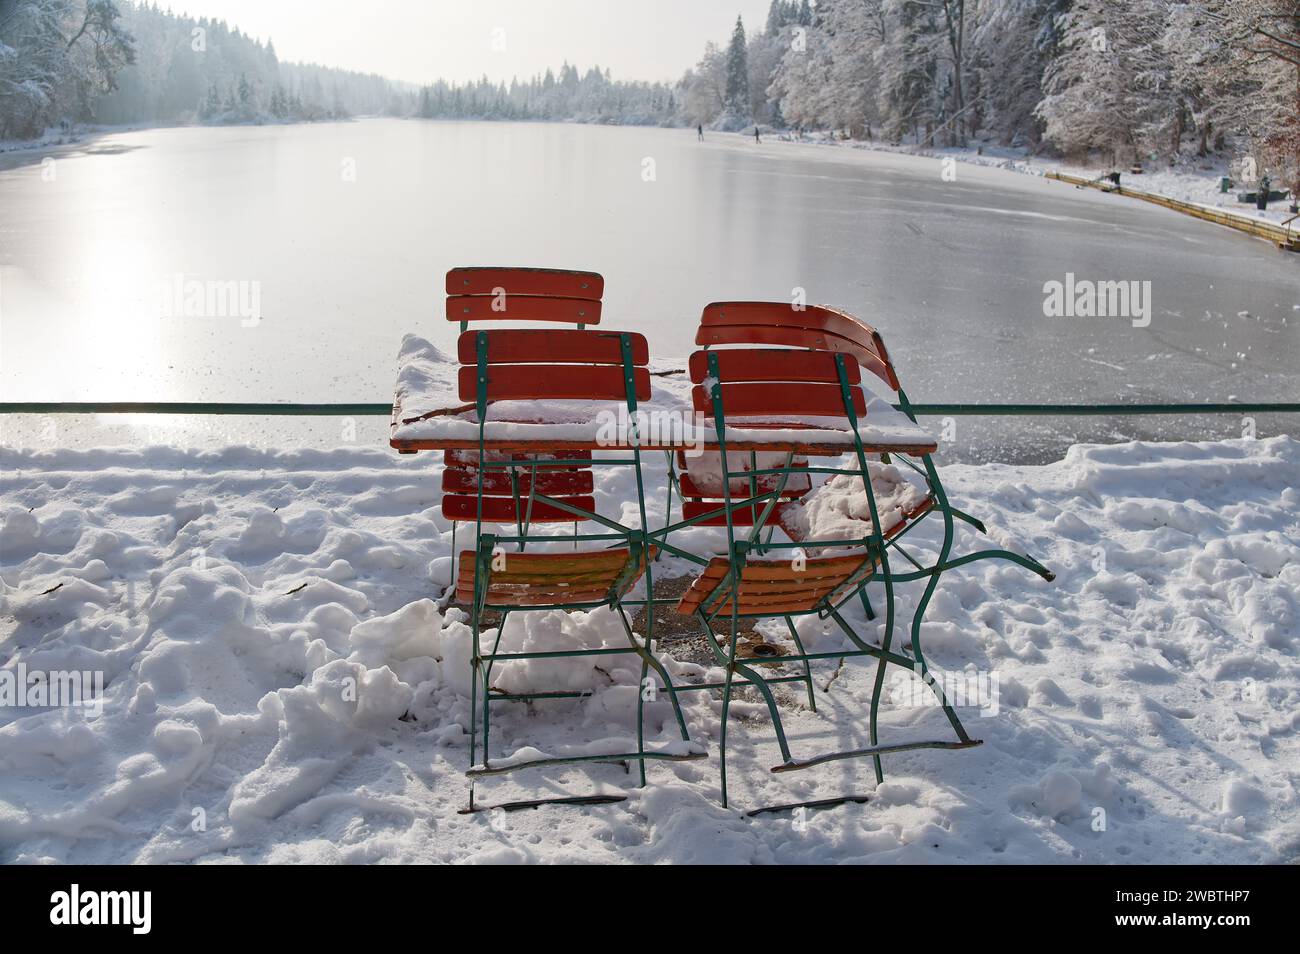 Table et chaises d'un restaurant dans un paysage hivernal enneigé et basse température Banque D'Images